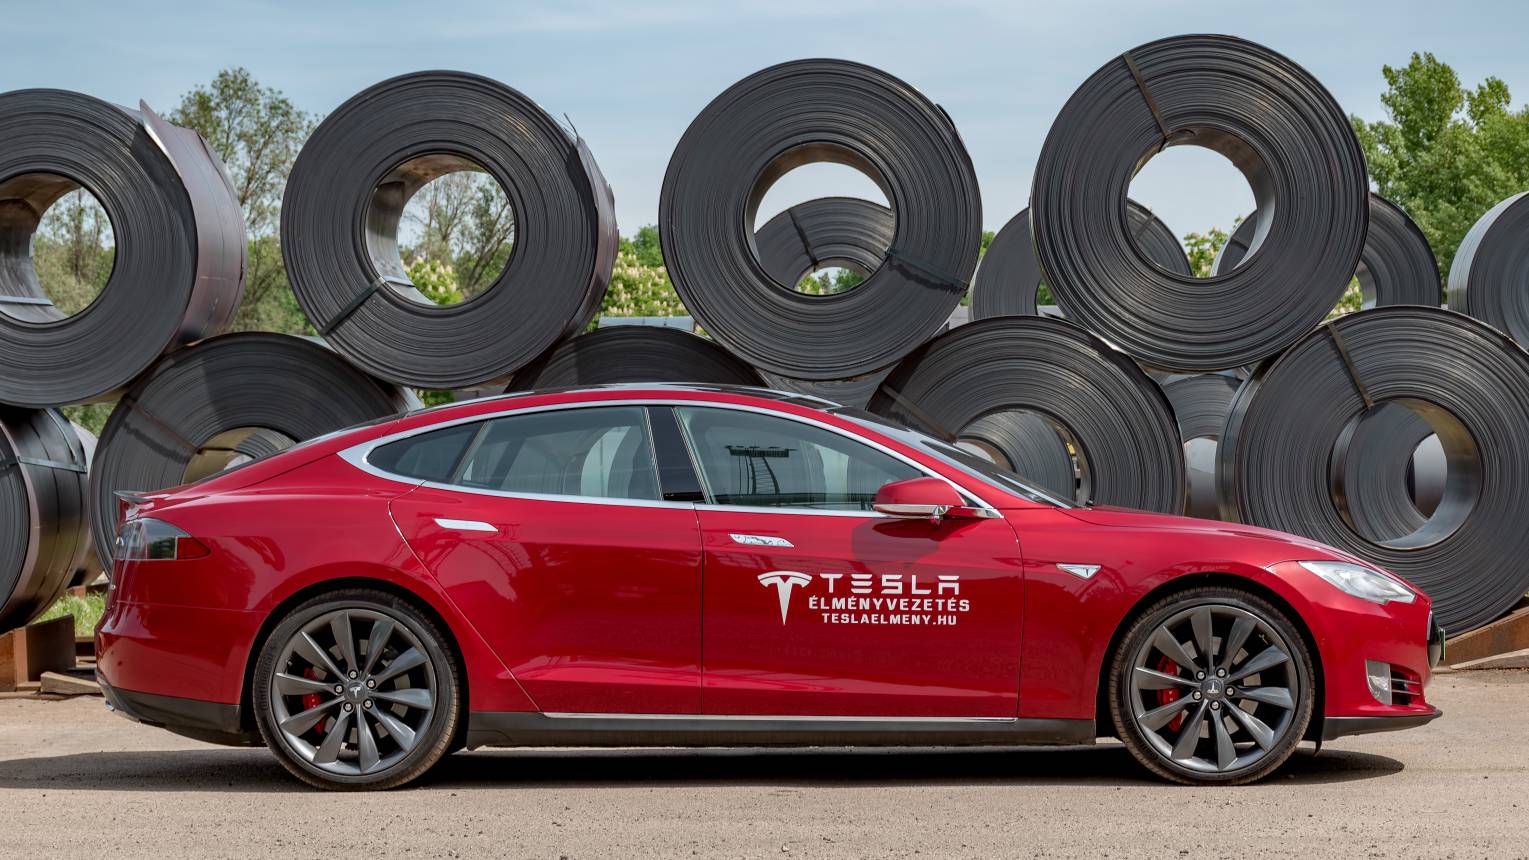 Tesla vezetés céges csapatnak